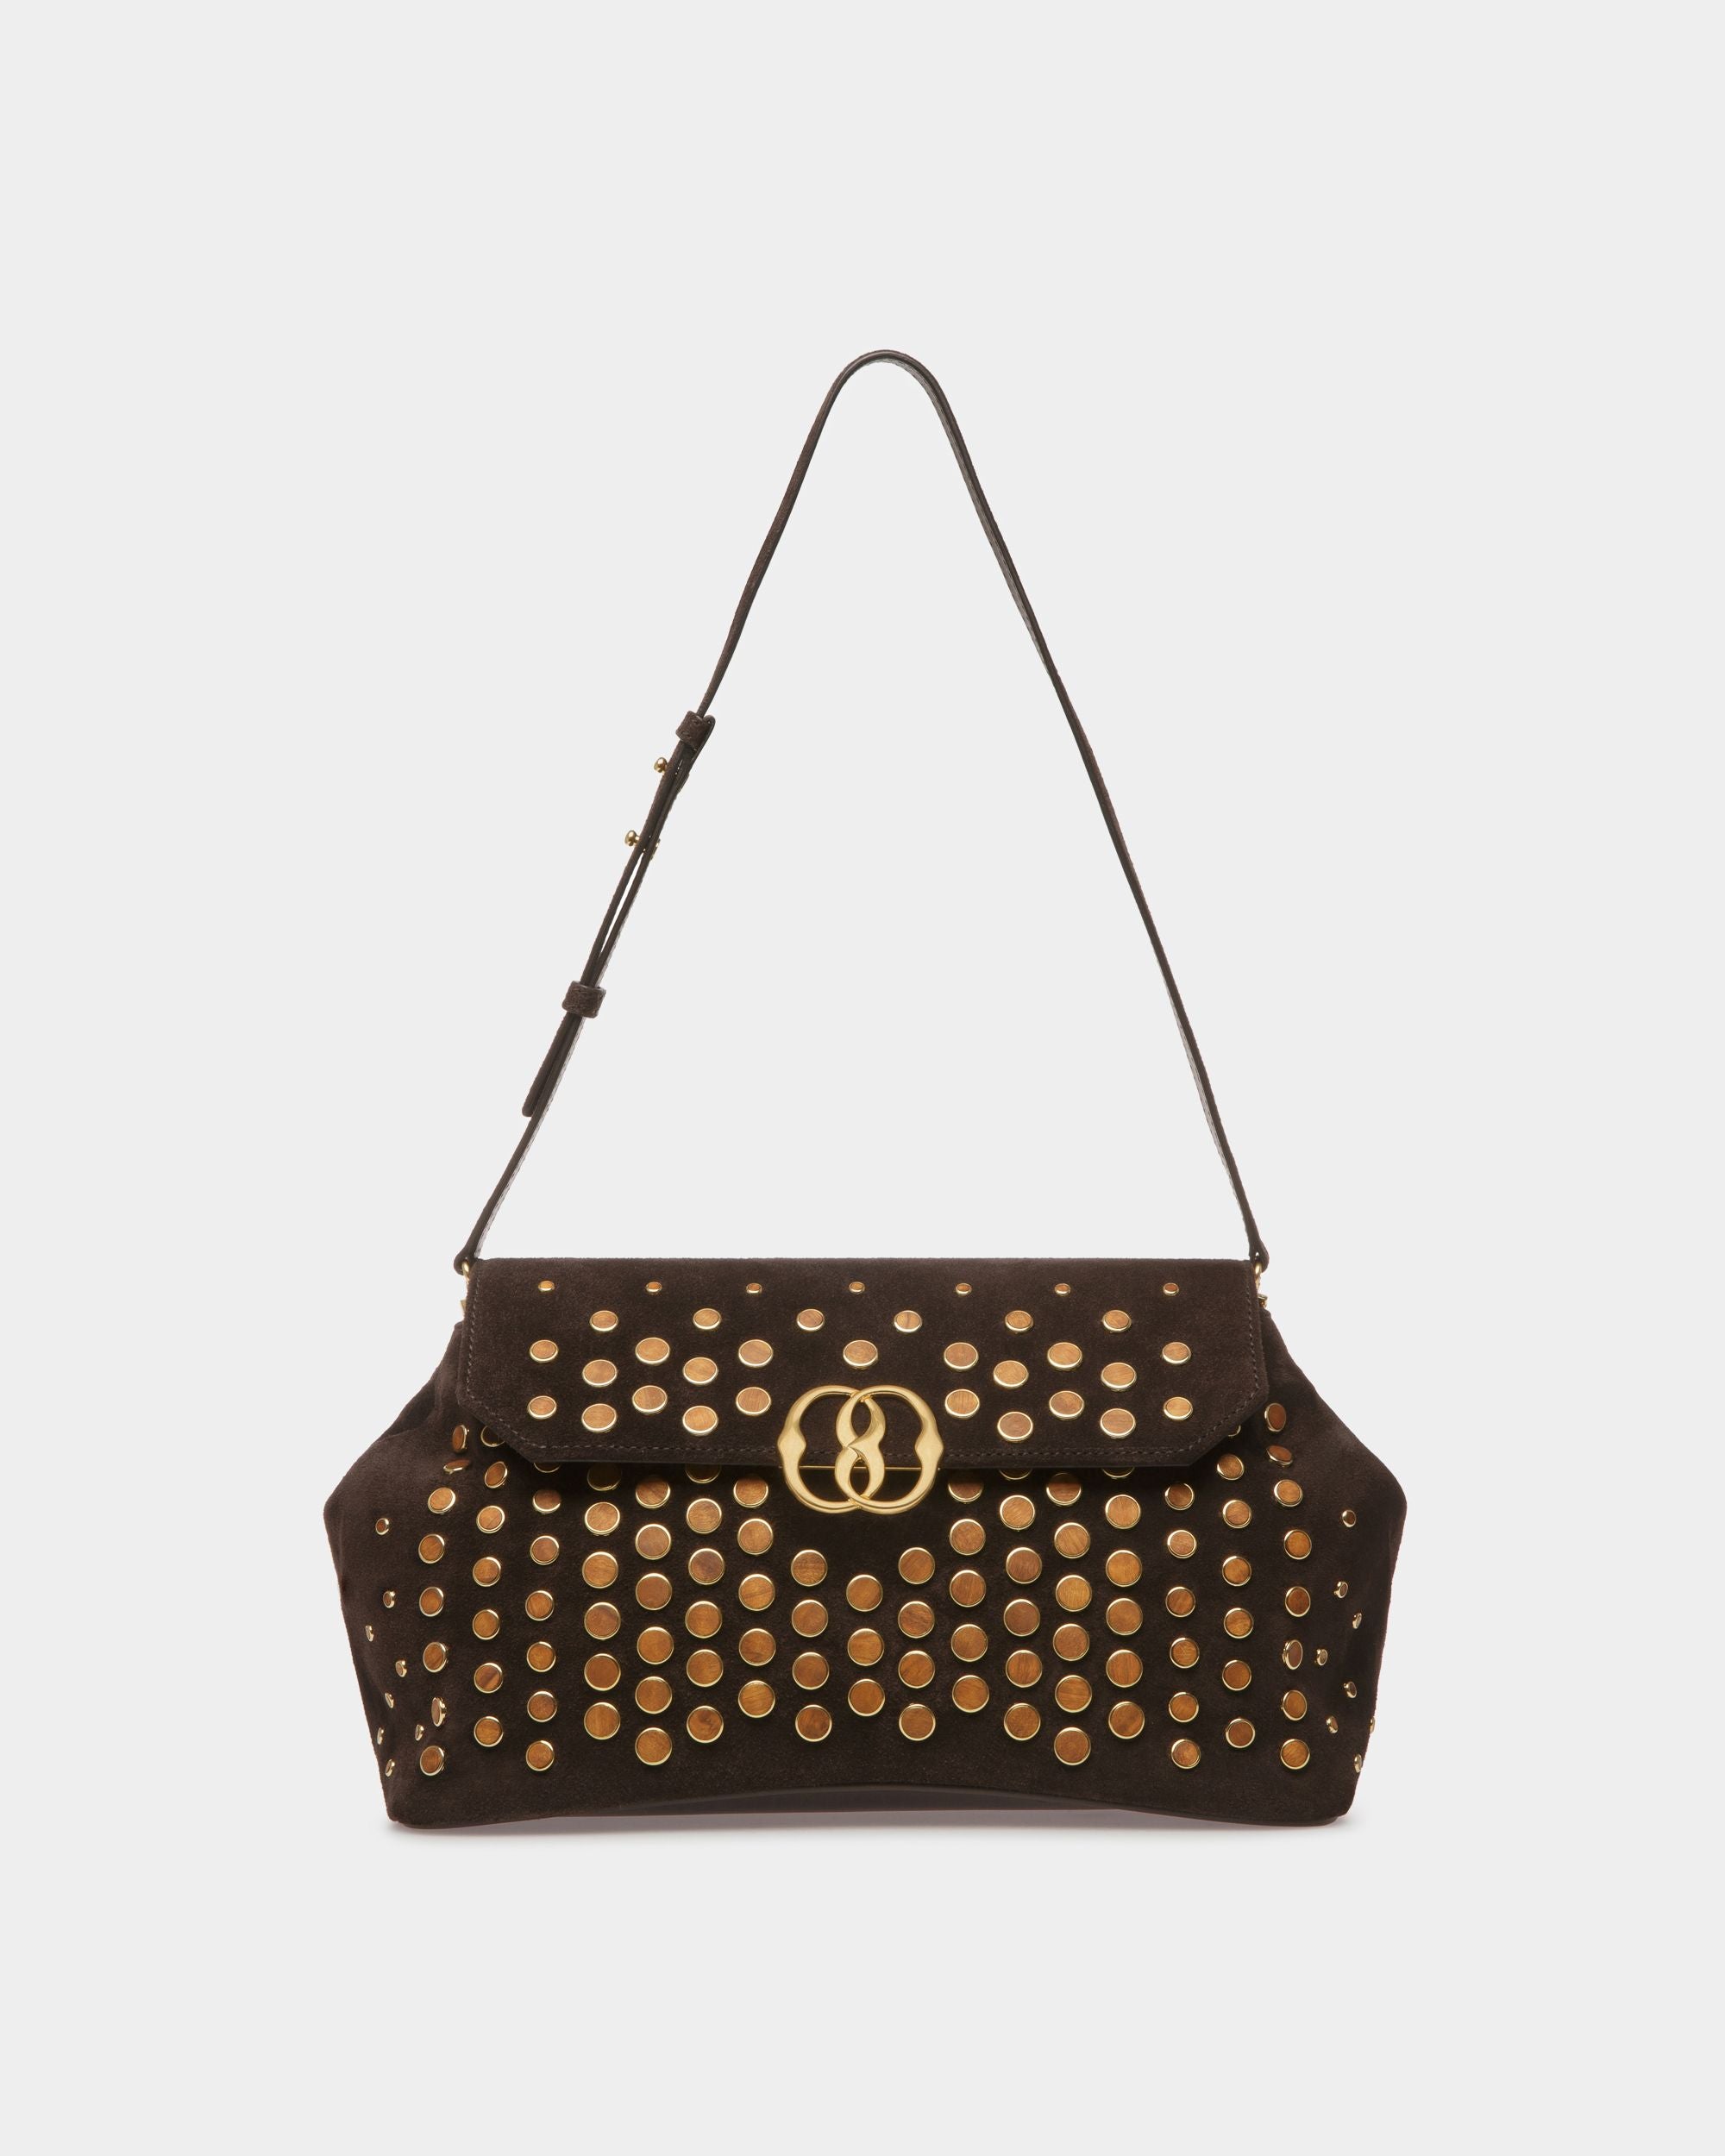 Emblem Slope Medium | Women's Shoulder Bag | Brown Leather | Bally | Still Life Front